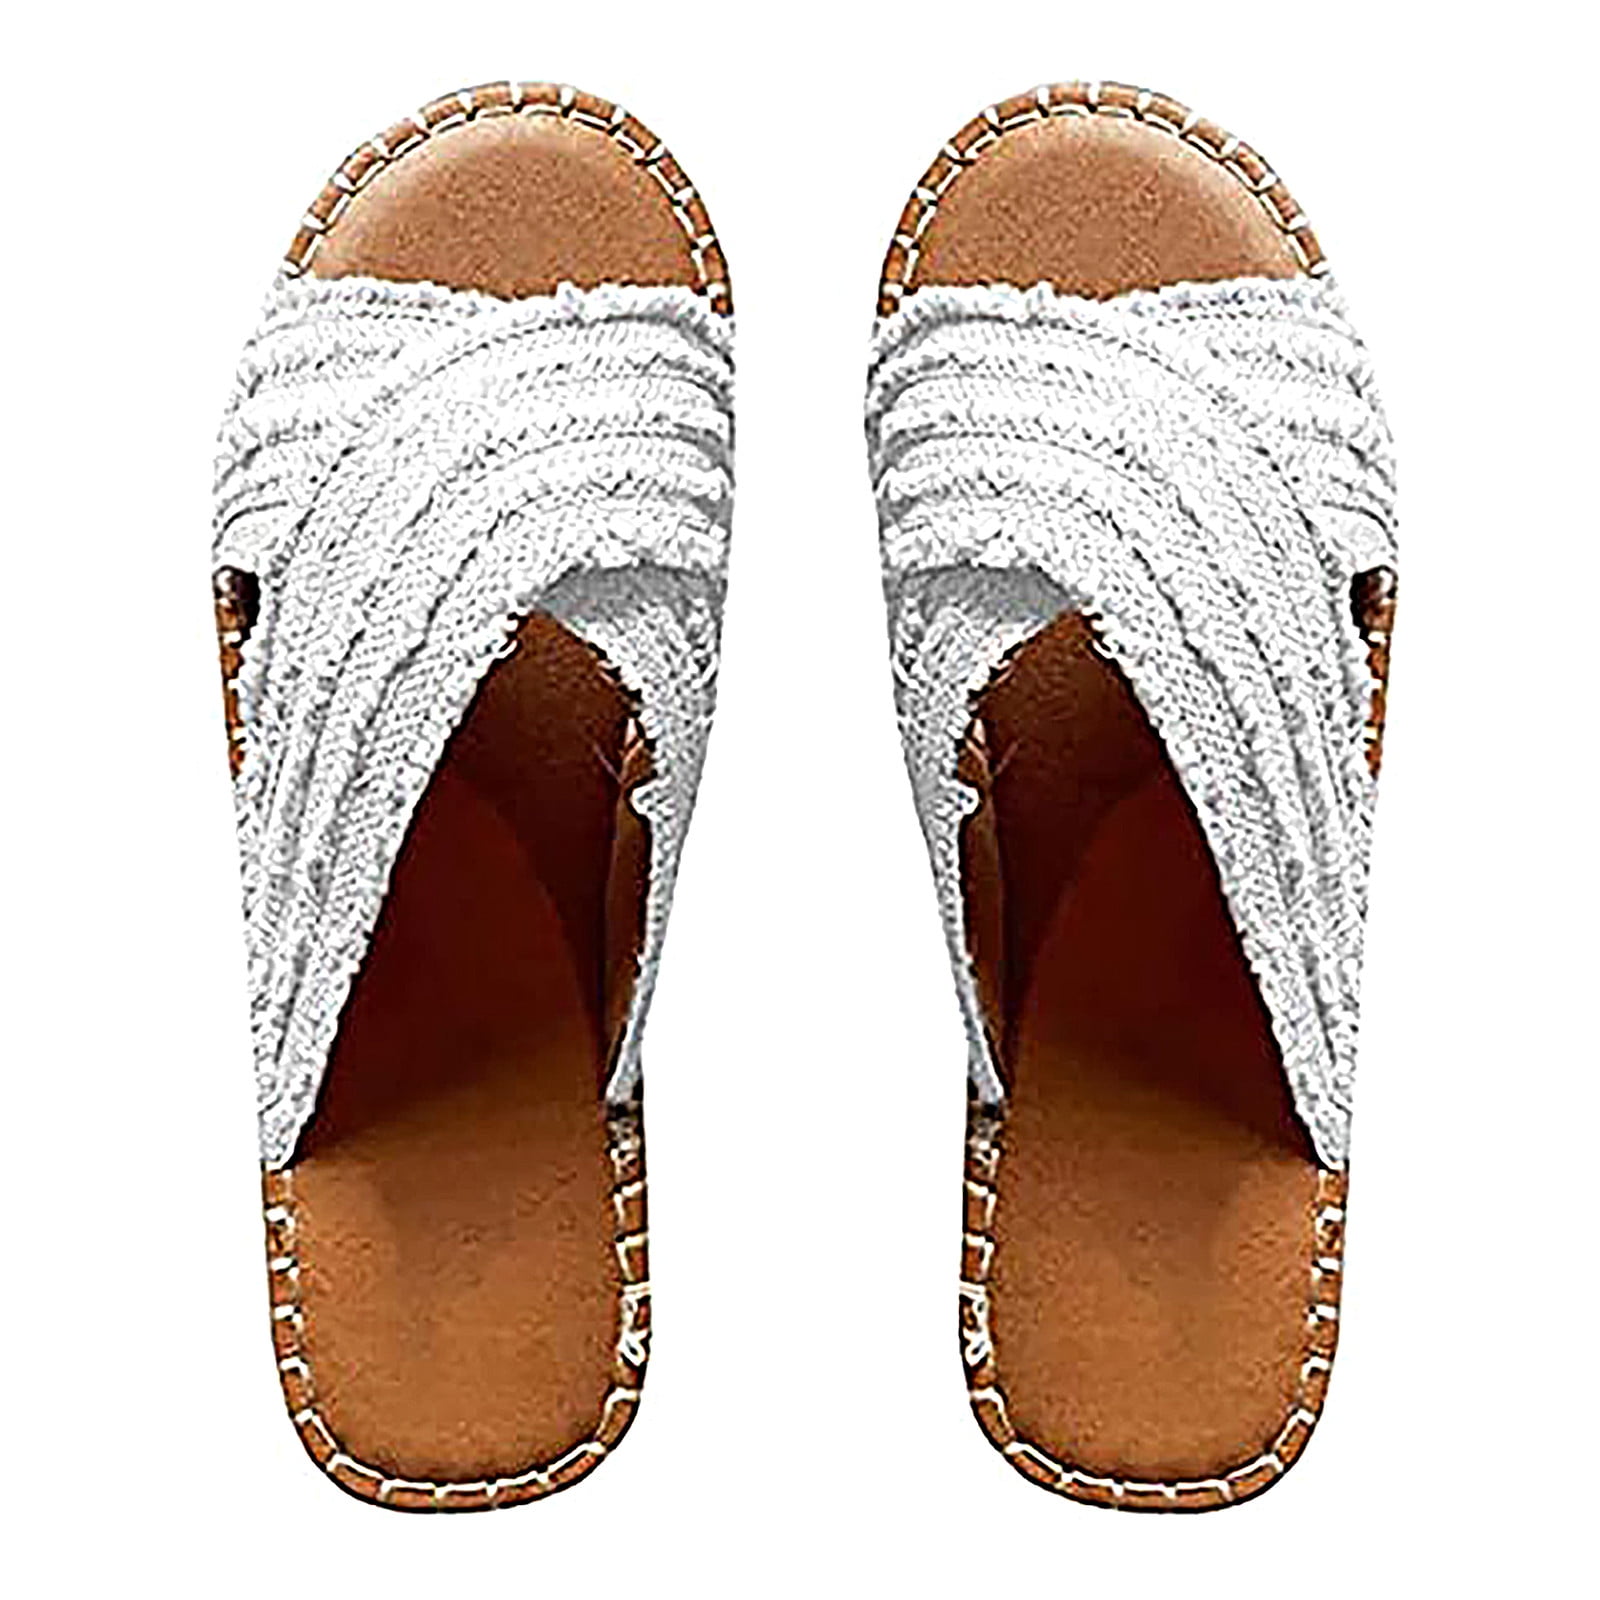 Buy > ladies brown sandals > in stock